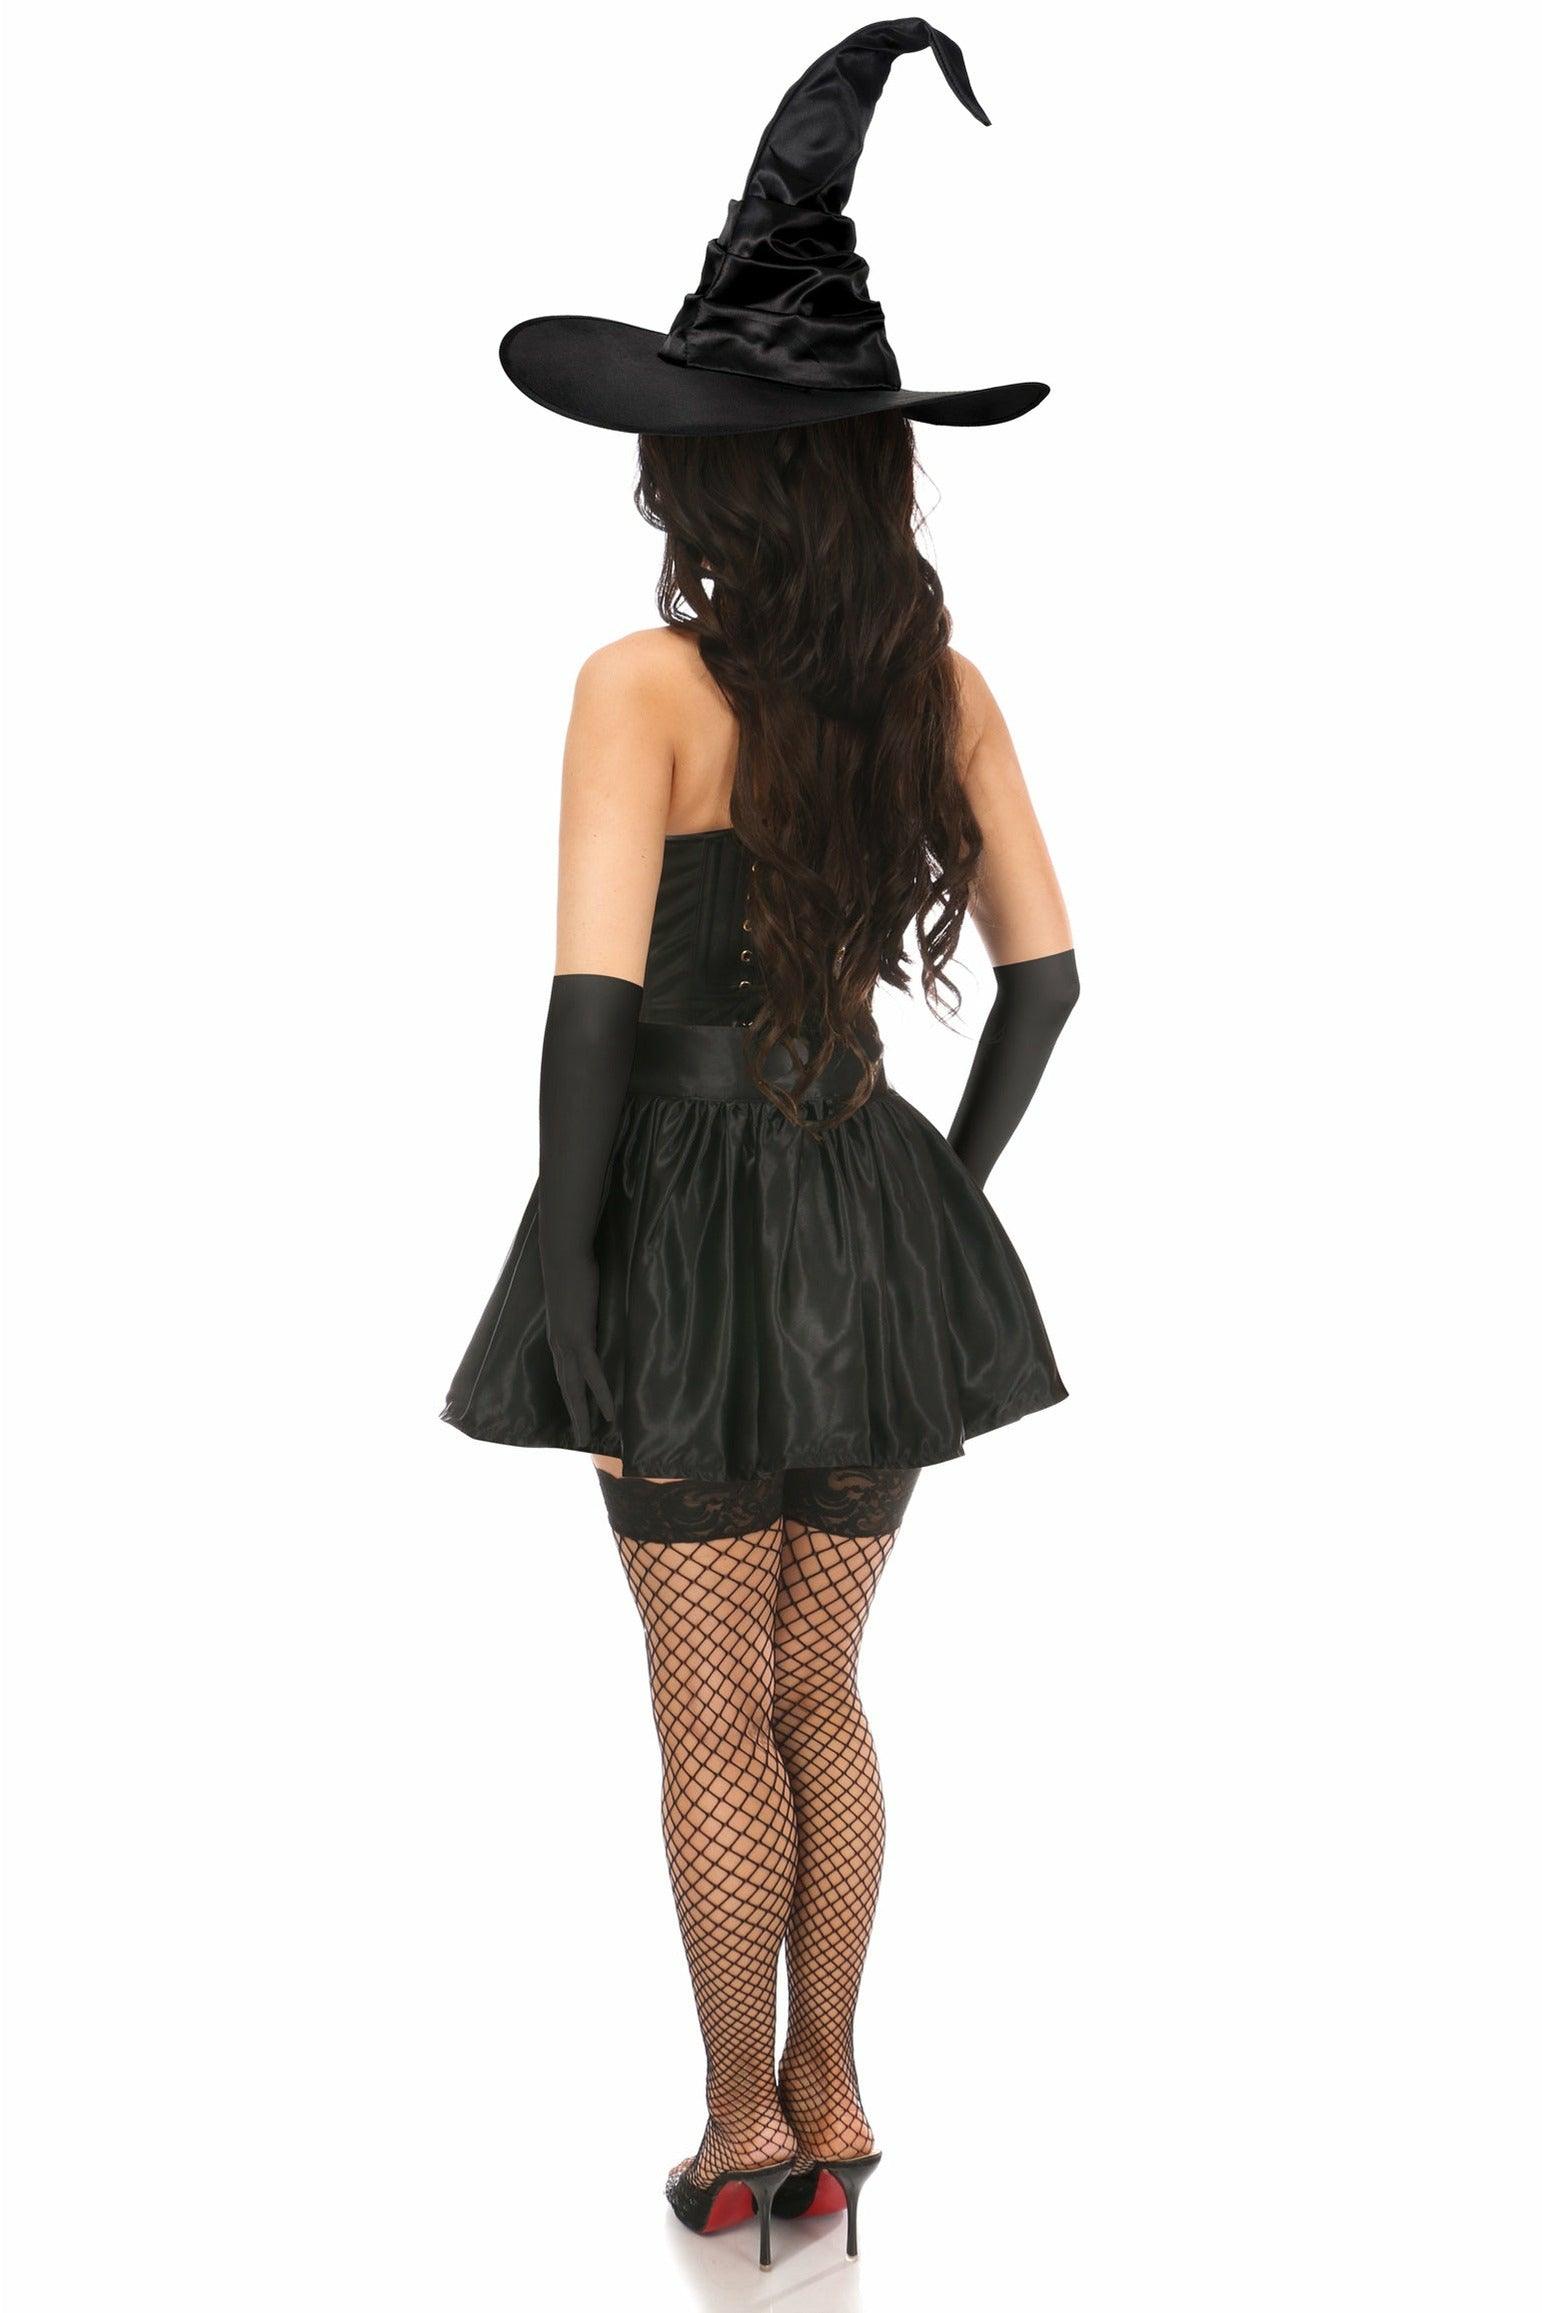 Lavish 4 PC Black Lace Witch Corset Costume - Flyclothing LLC